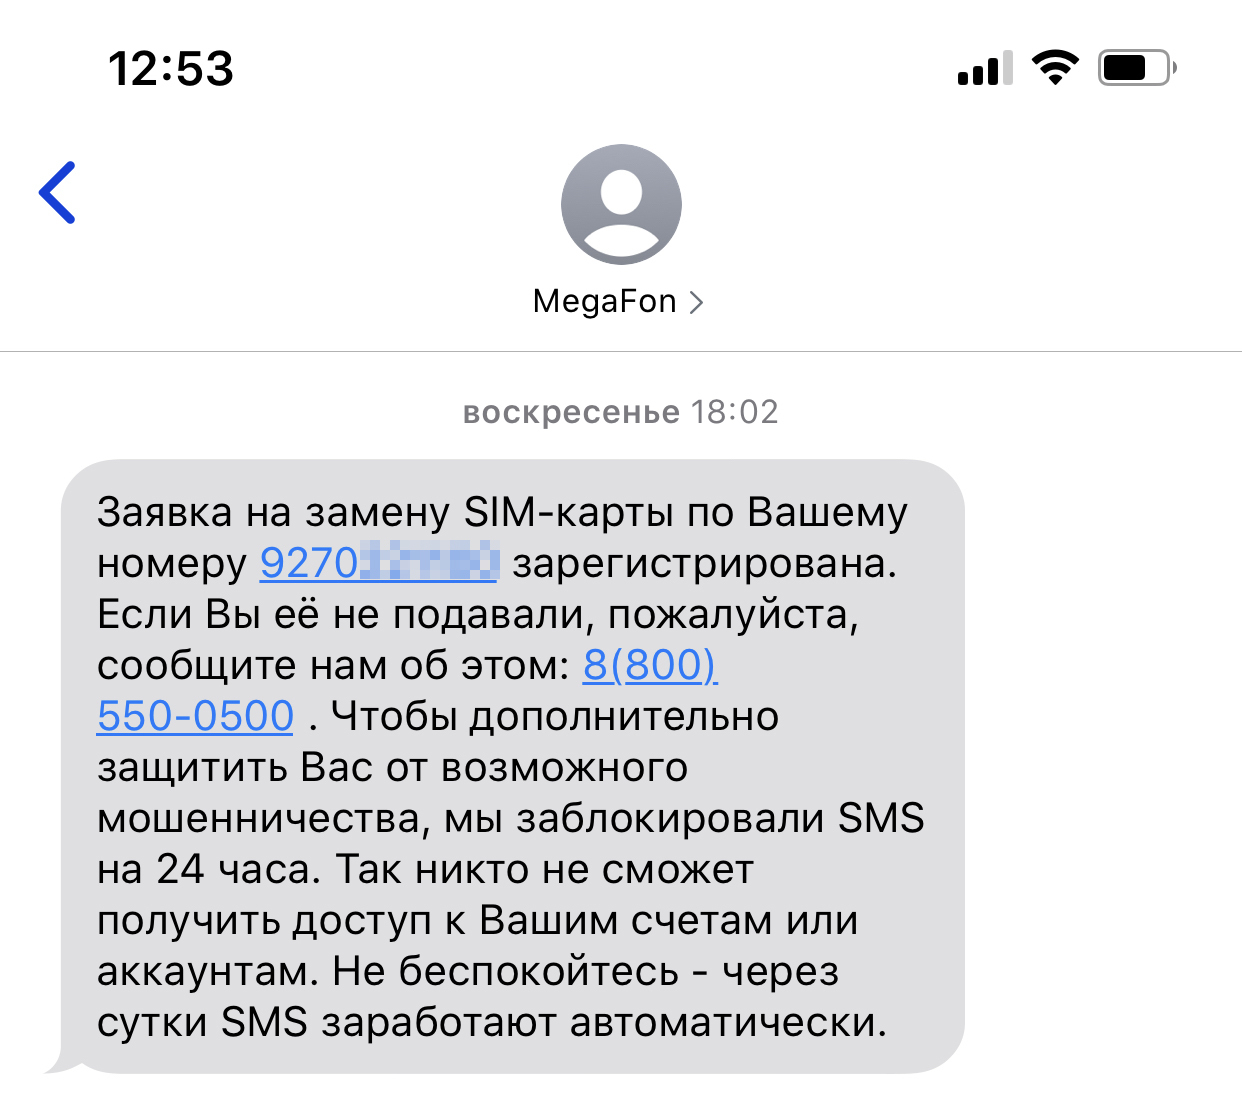 Не могу войти в личный кабинет: «Ошибка! Ваш аккаунт заблокирован» | prachka-mira.ru